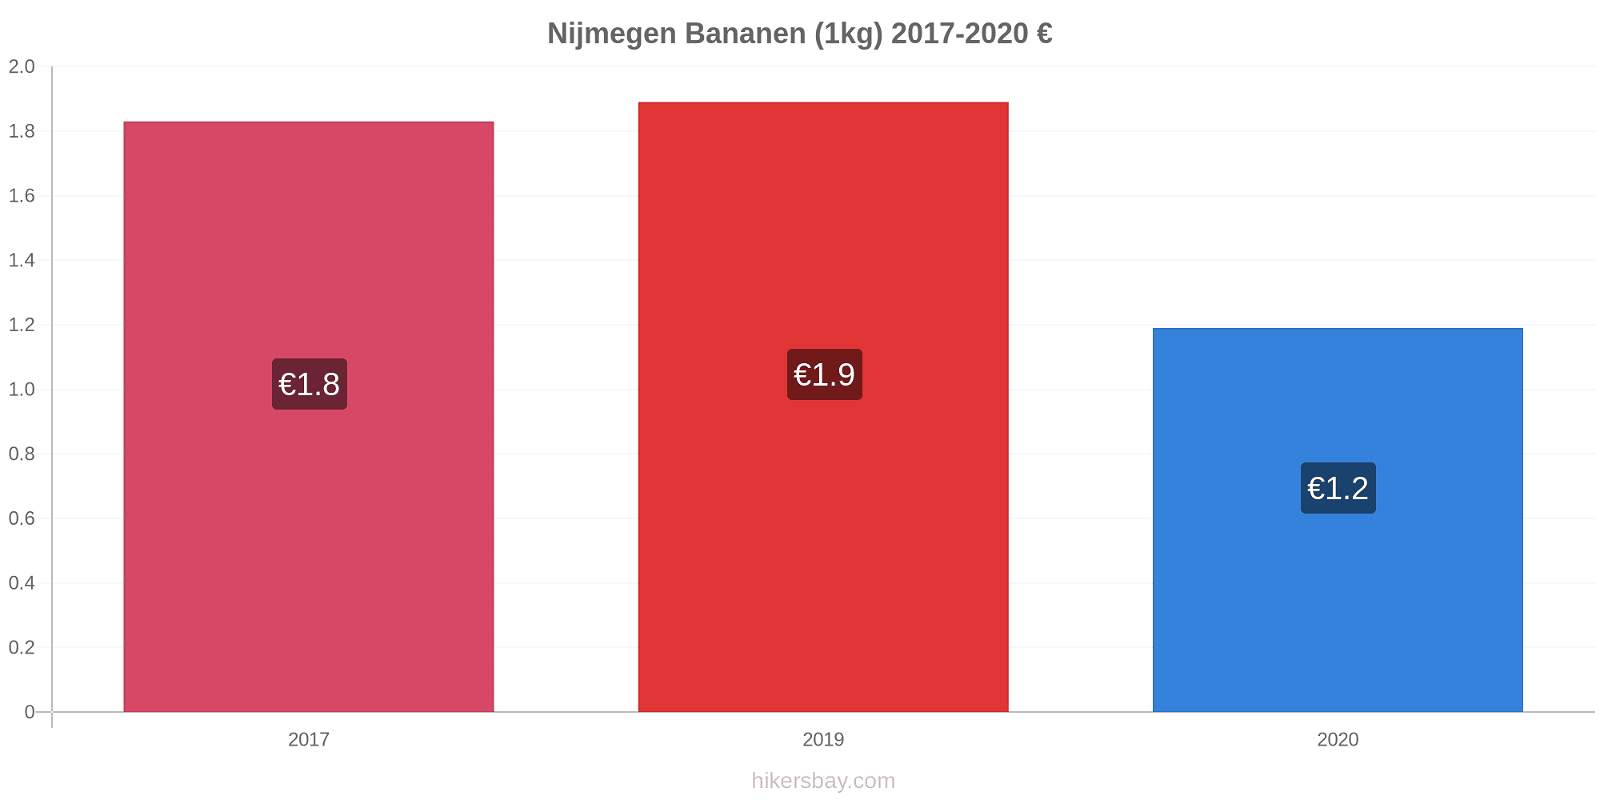 Nijmegen prijswijzigingen Banaan (1kg) hikersbay.com